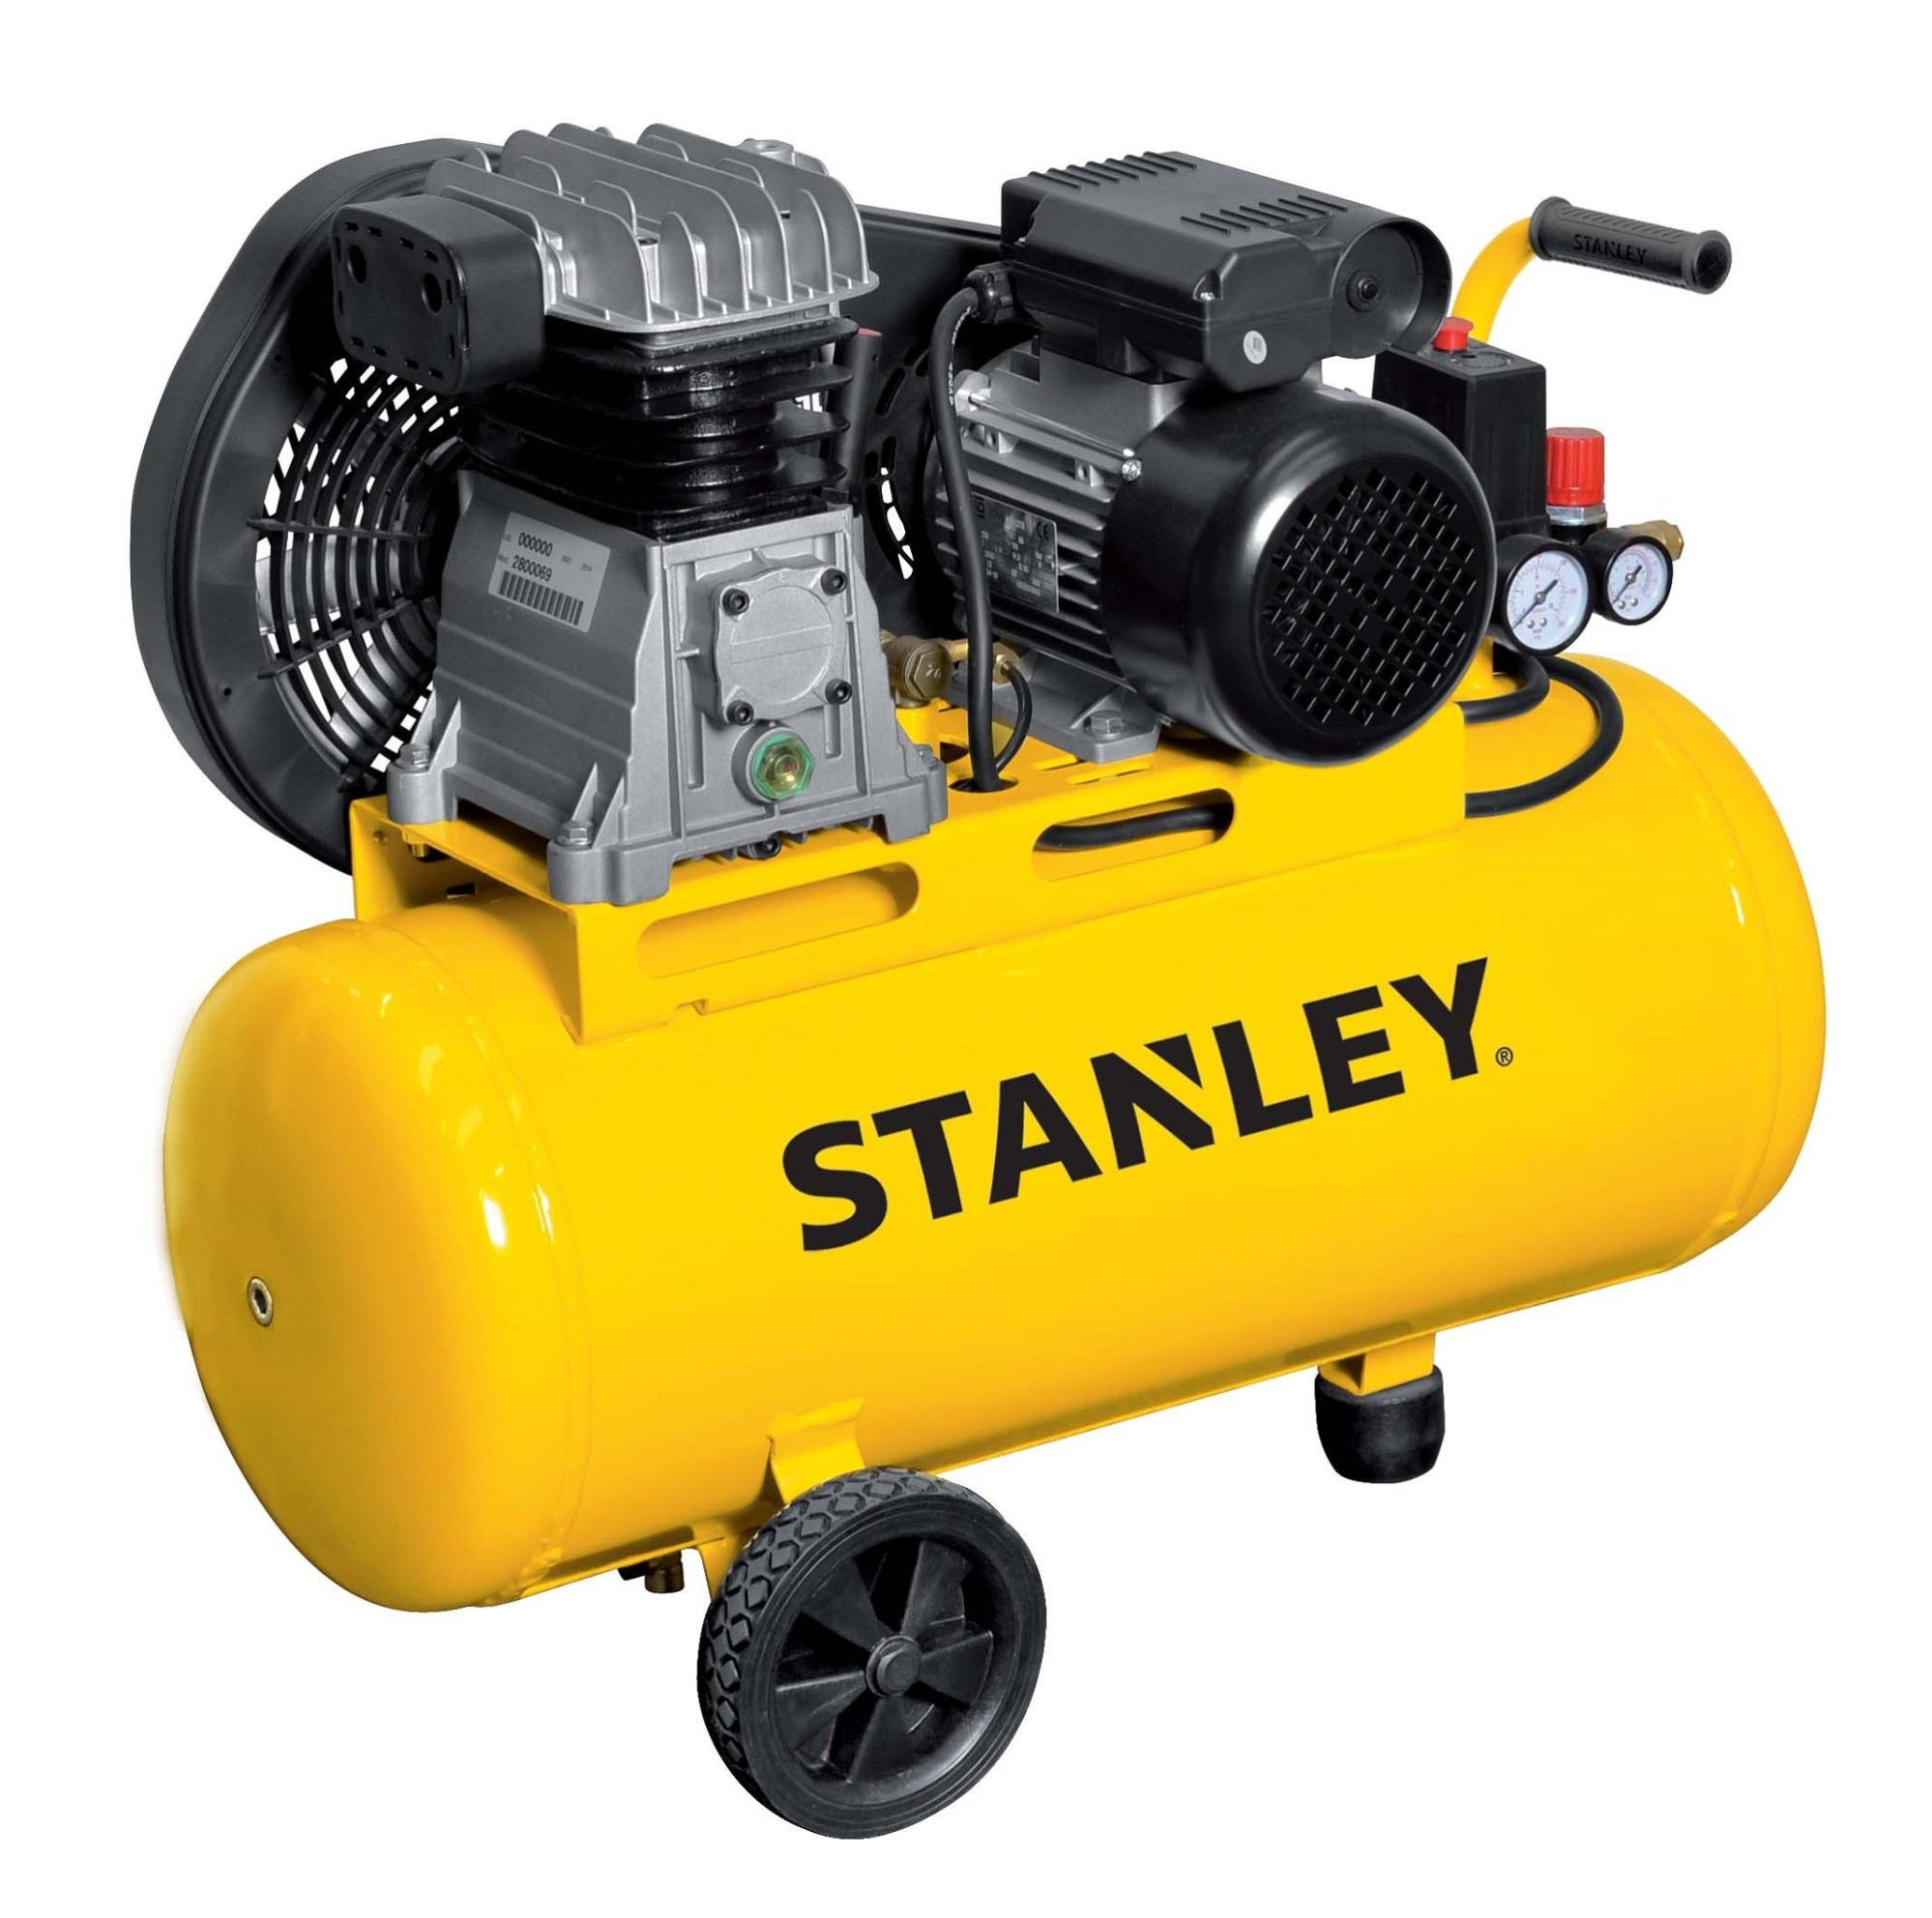 Compresor STANLEY B 251E/9 de 50l de depósito